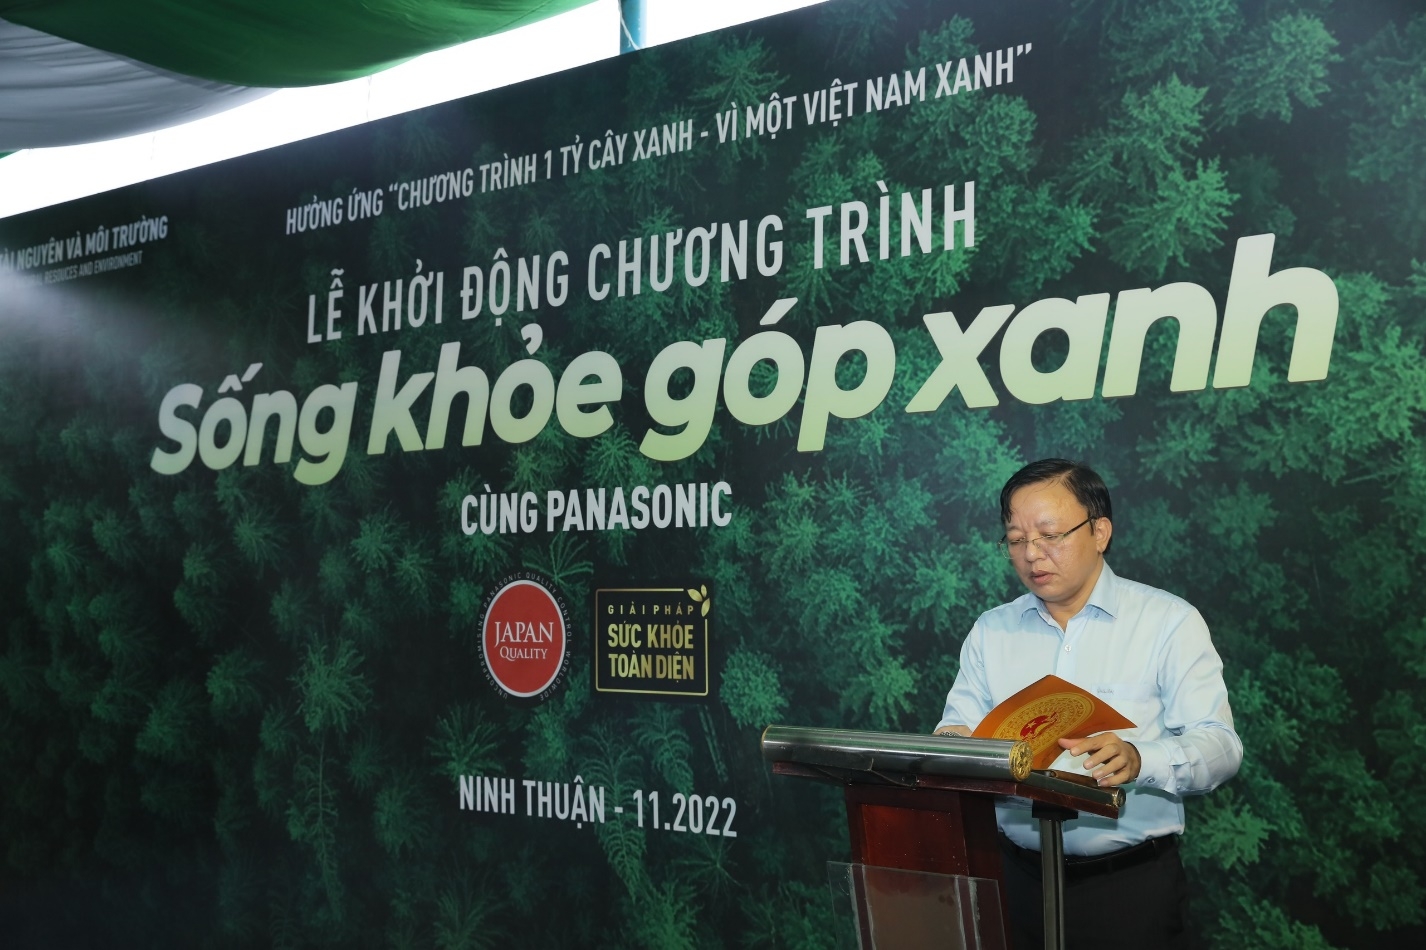 Khởi động chương trình trồng rừng “Sống khỏe góp xanh” chung sức trồng 1 tỷ cây xanh cho Việt Nam